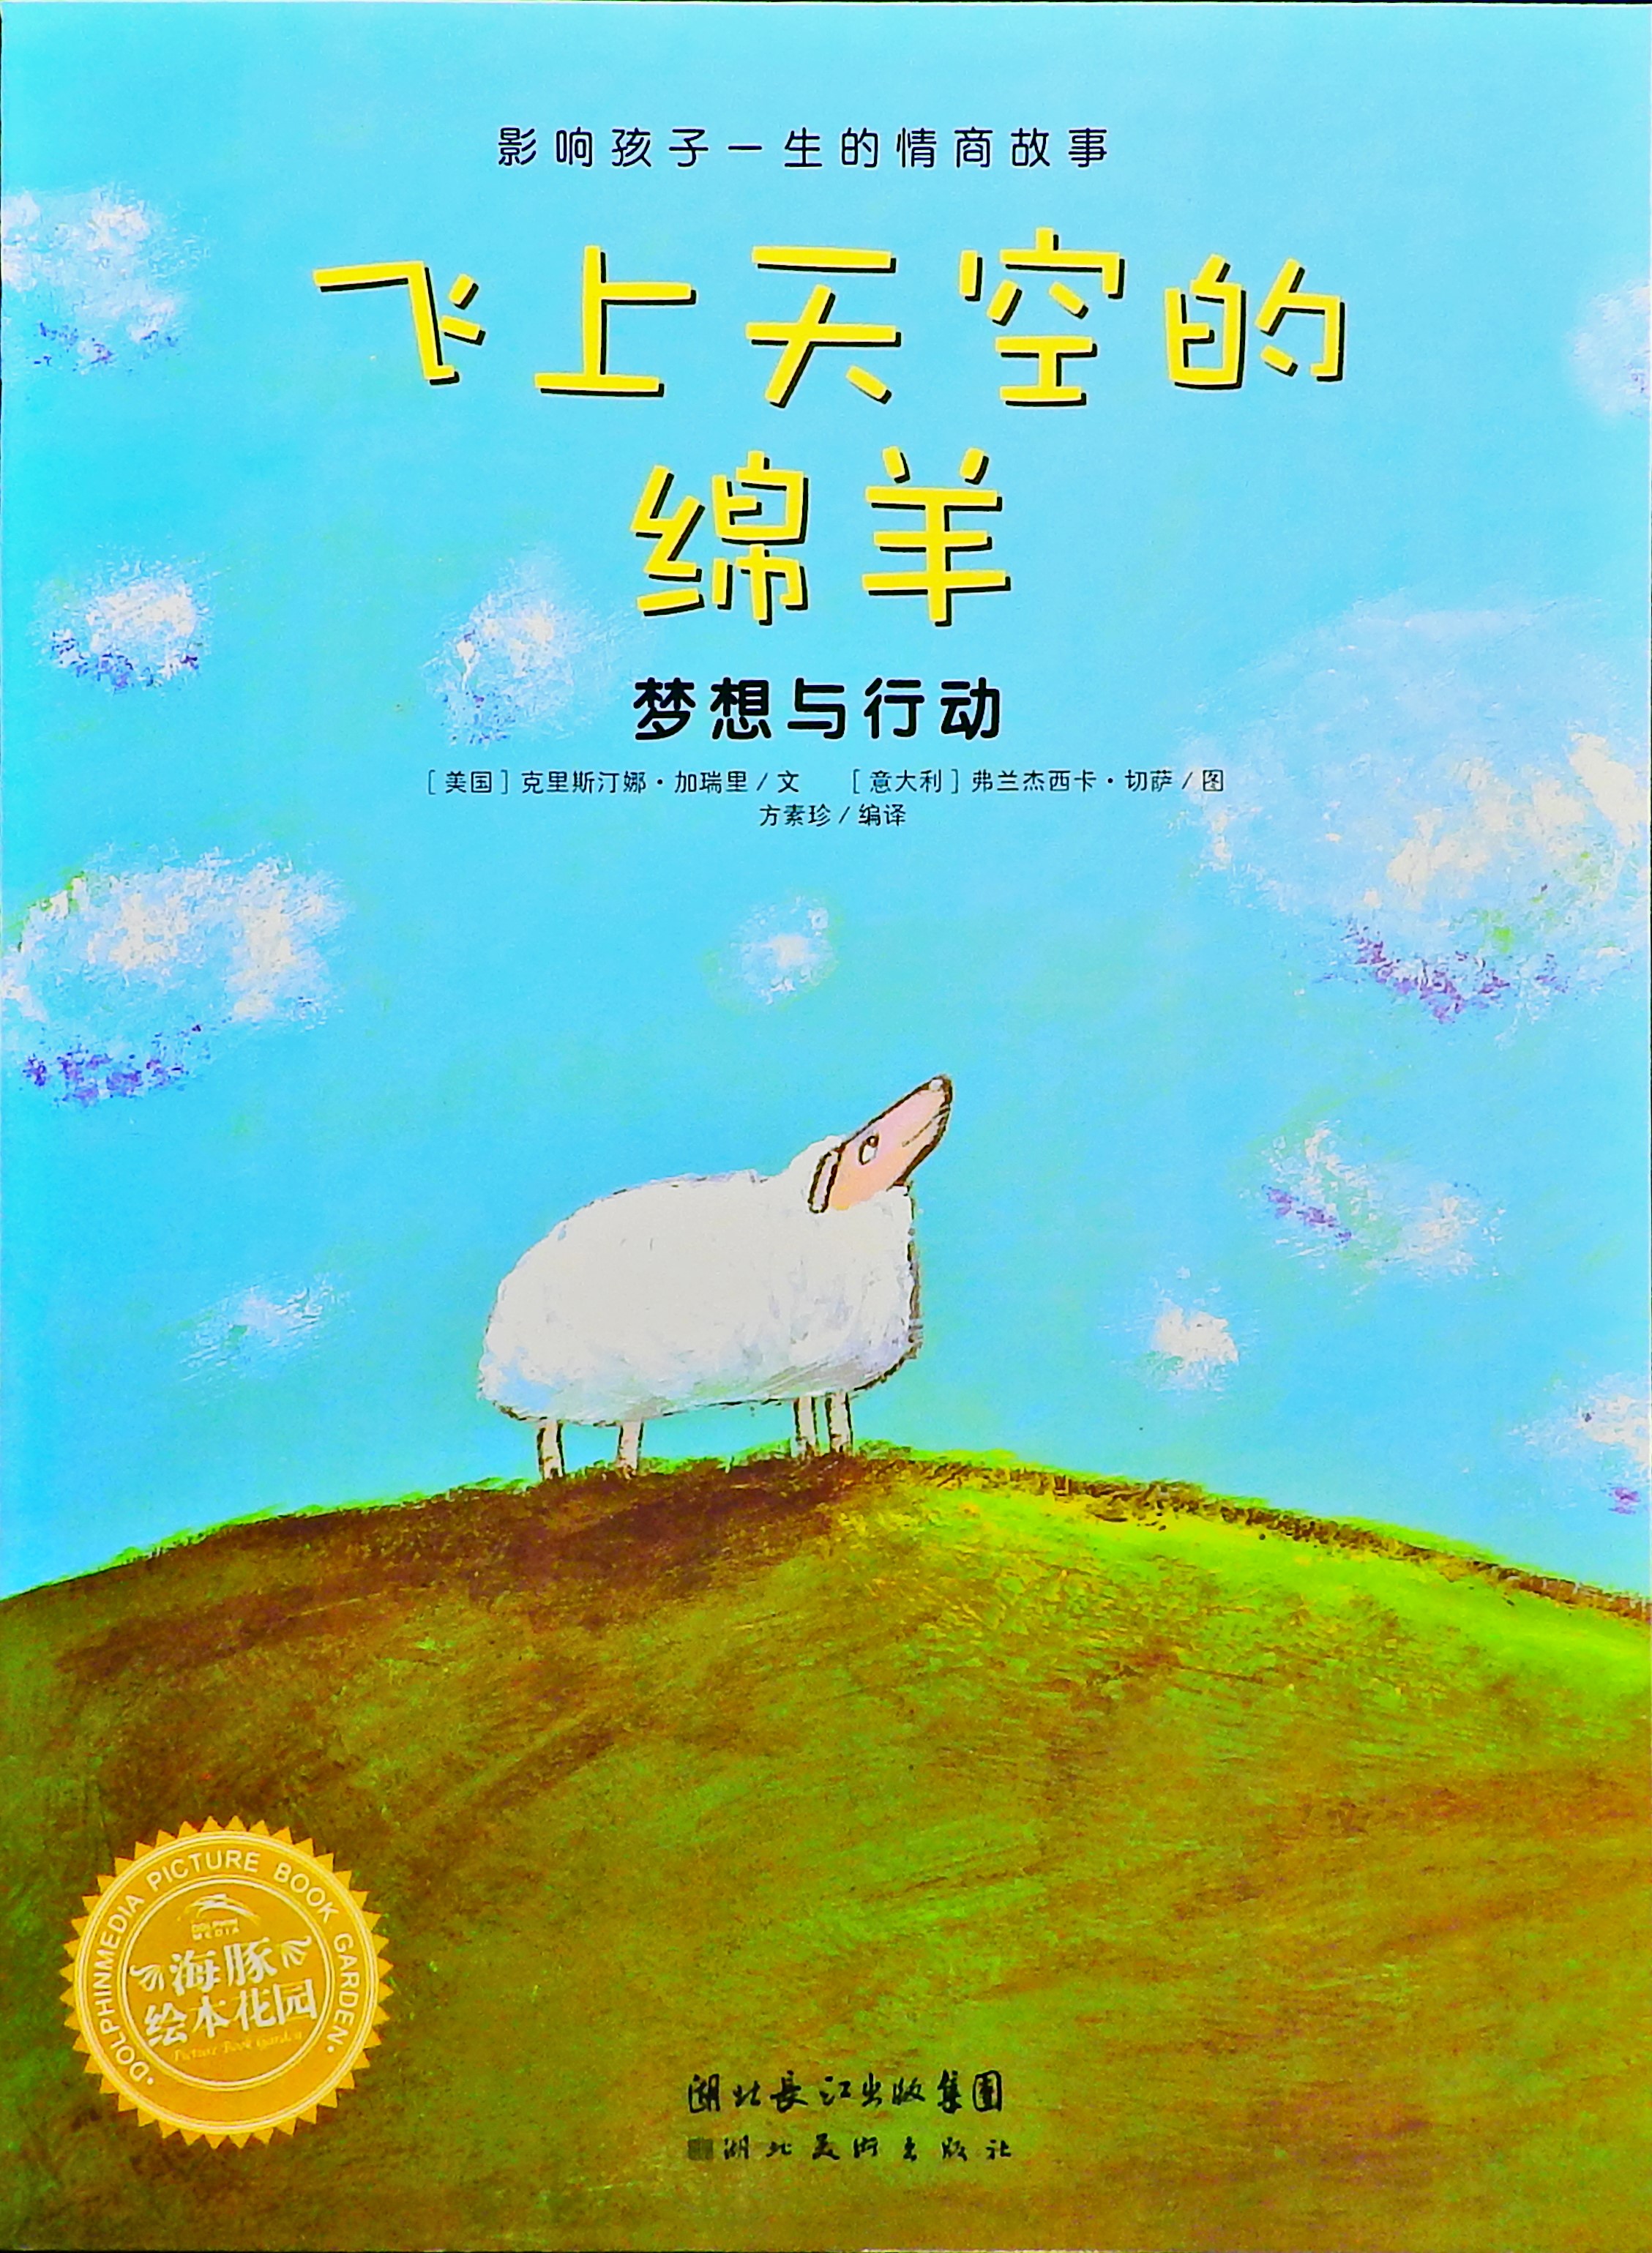 飞上天空的绵羊 (01),绘本,绘本故事,绘本阅读,故事书,童书,图画书,课外阅读